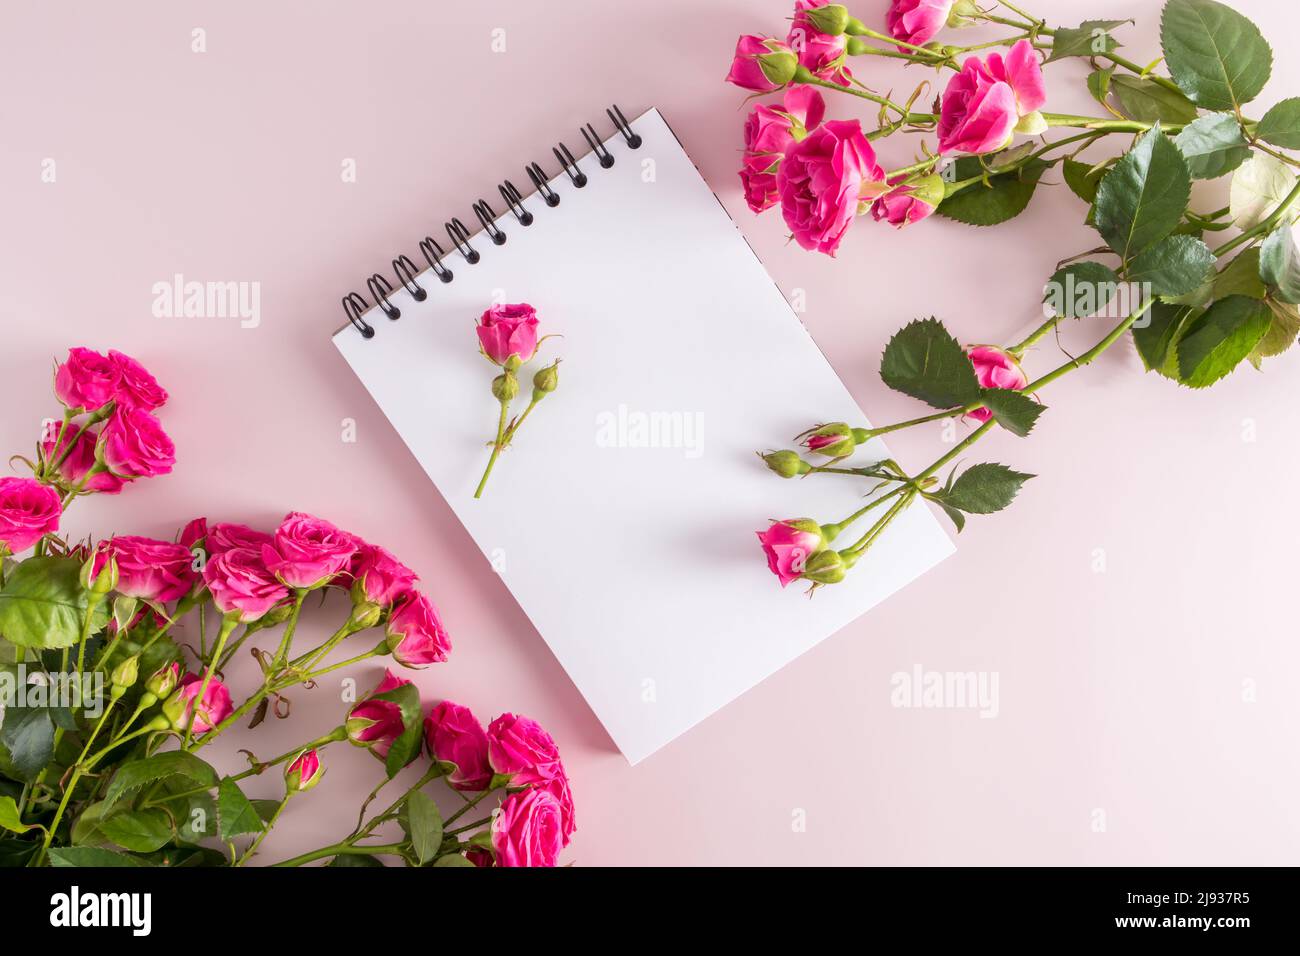 Festliche Komposition eines offenen Notizbuchs mit sauberen Blättern und schönen rosa Rosen im Garten. Draufsicht. Rosa Hintergrund. Platz für Text Stockfoto